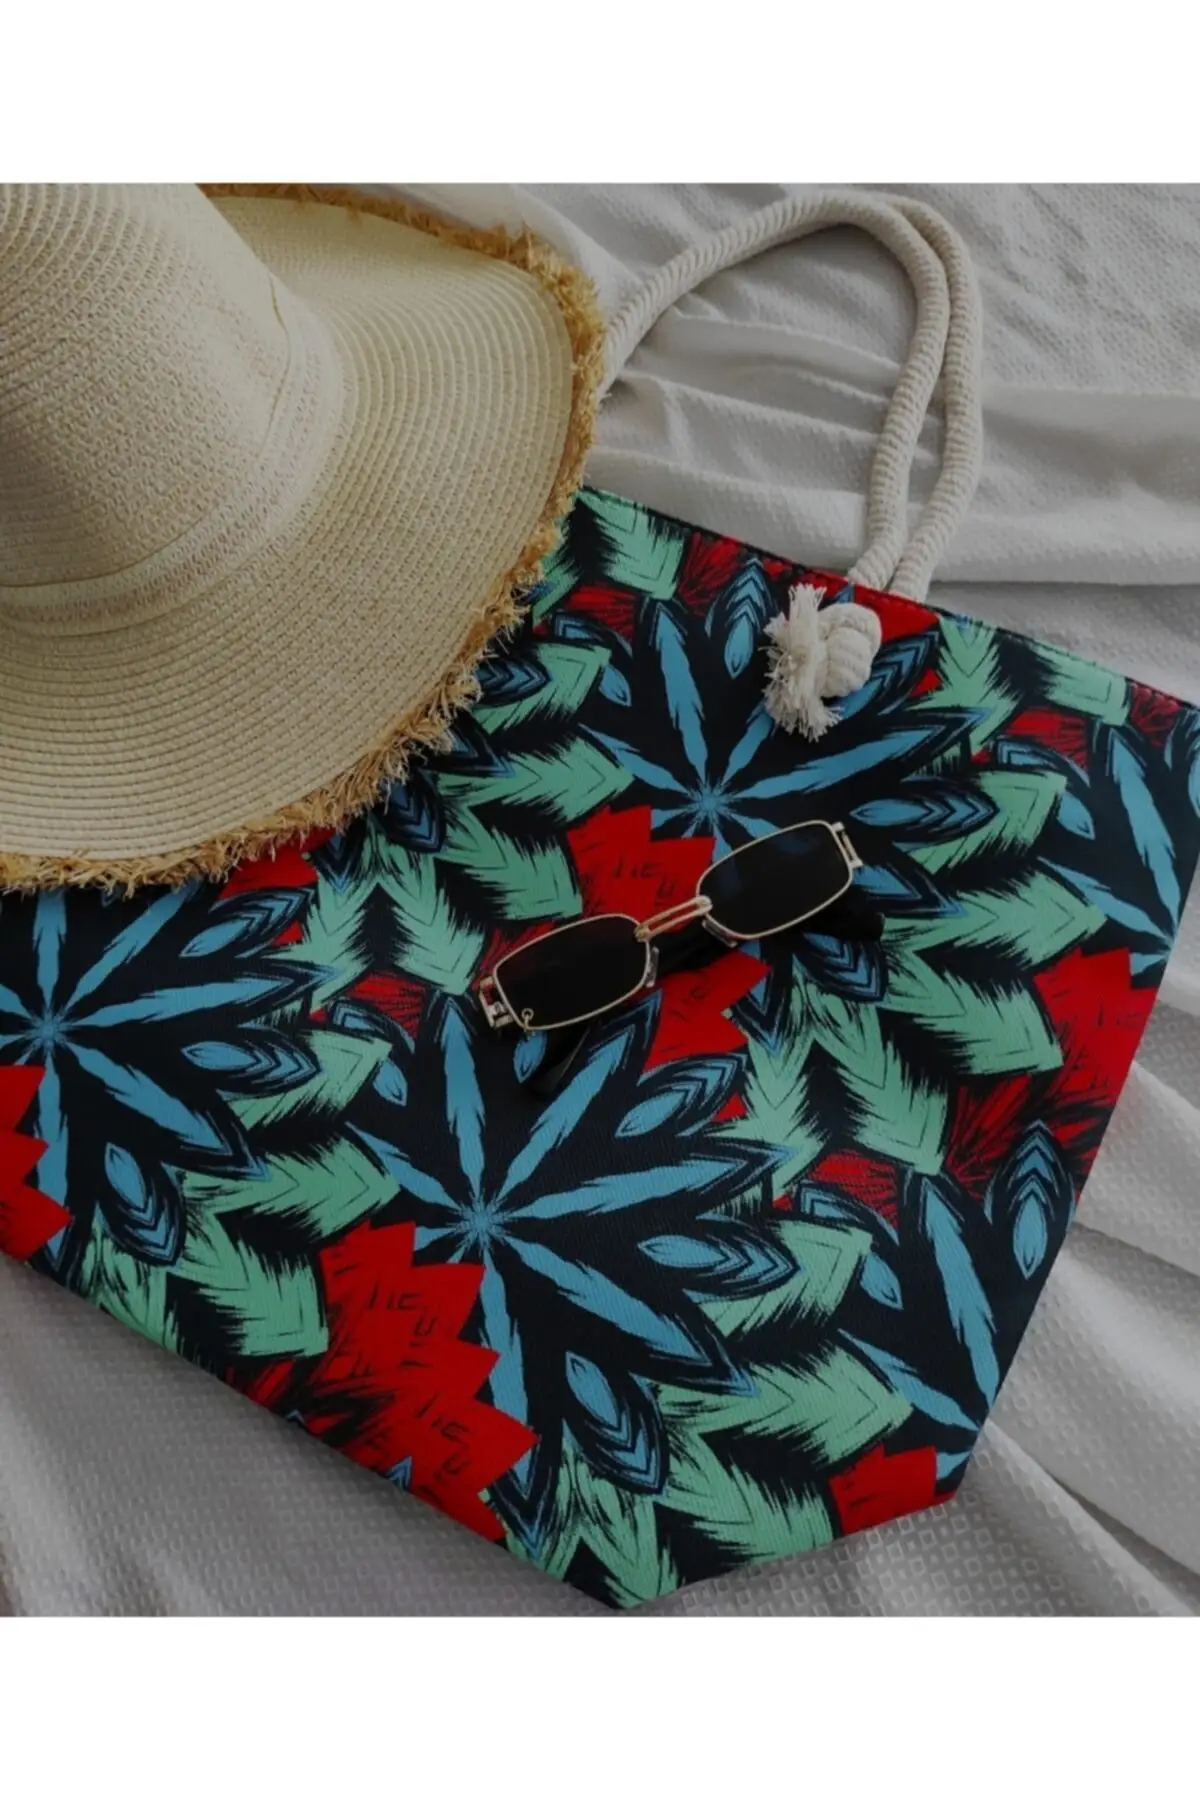 

Женская пляжная Соломенная Сумка-тоут, многоцветный узор, модная вместительная сумка-шоппер на плечо с узором